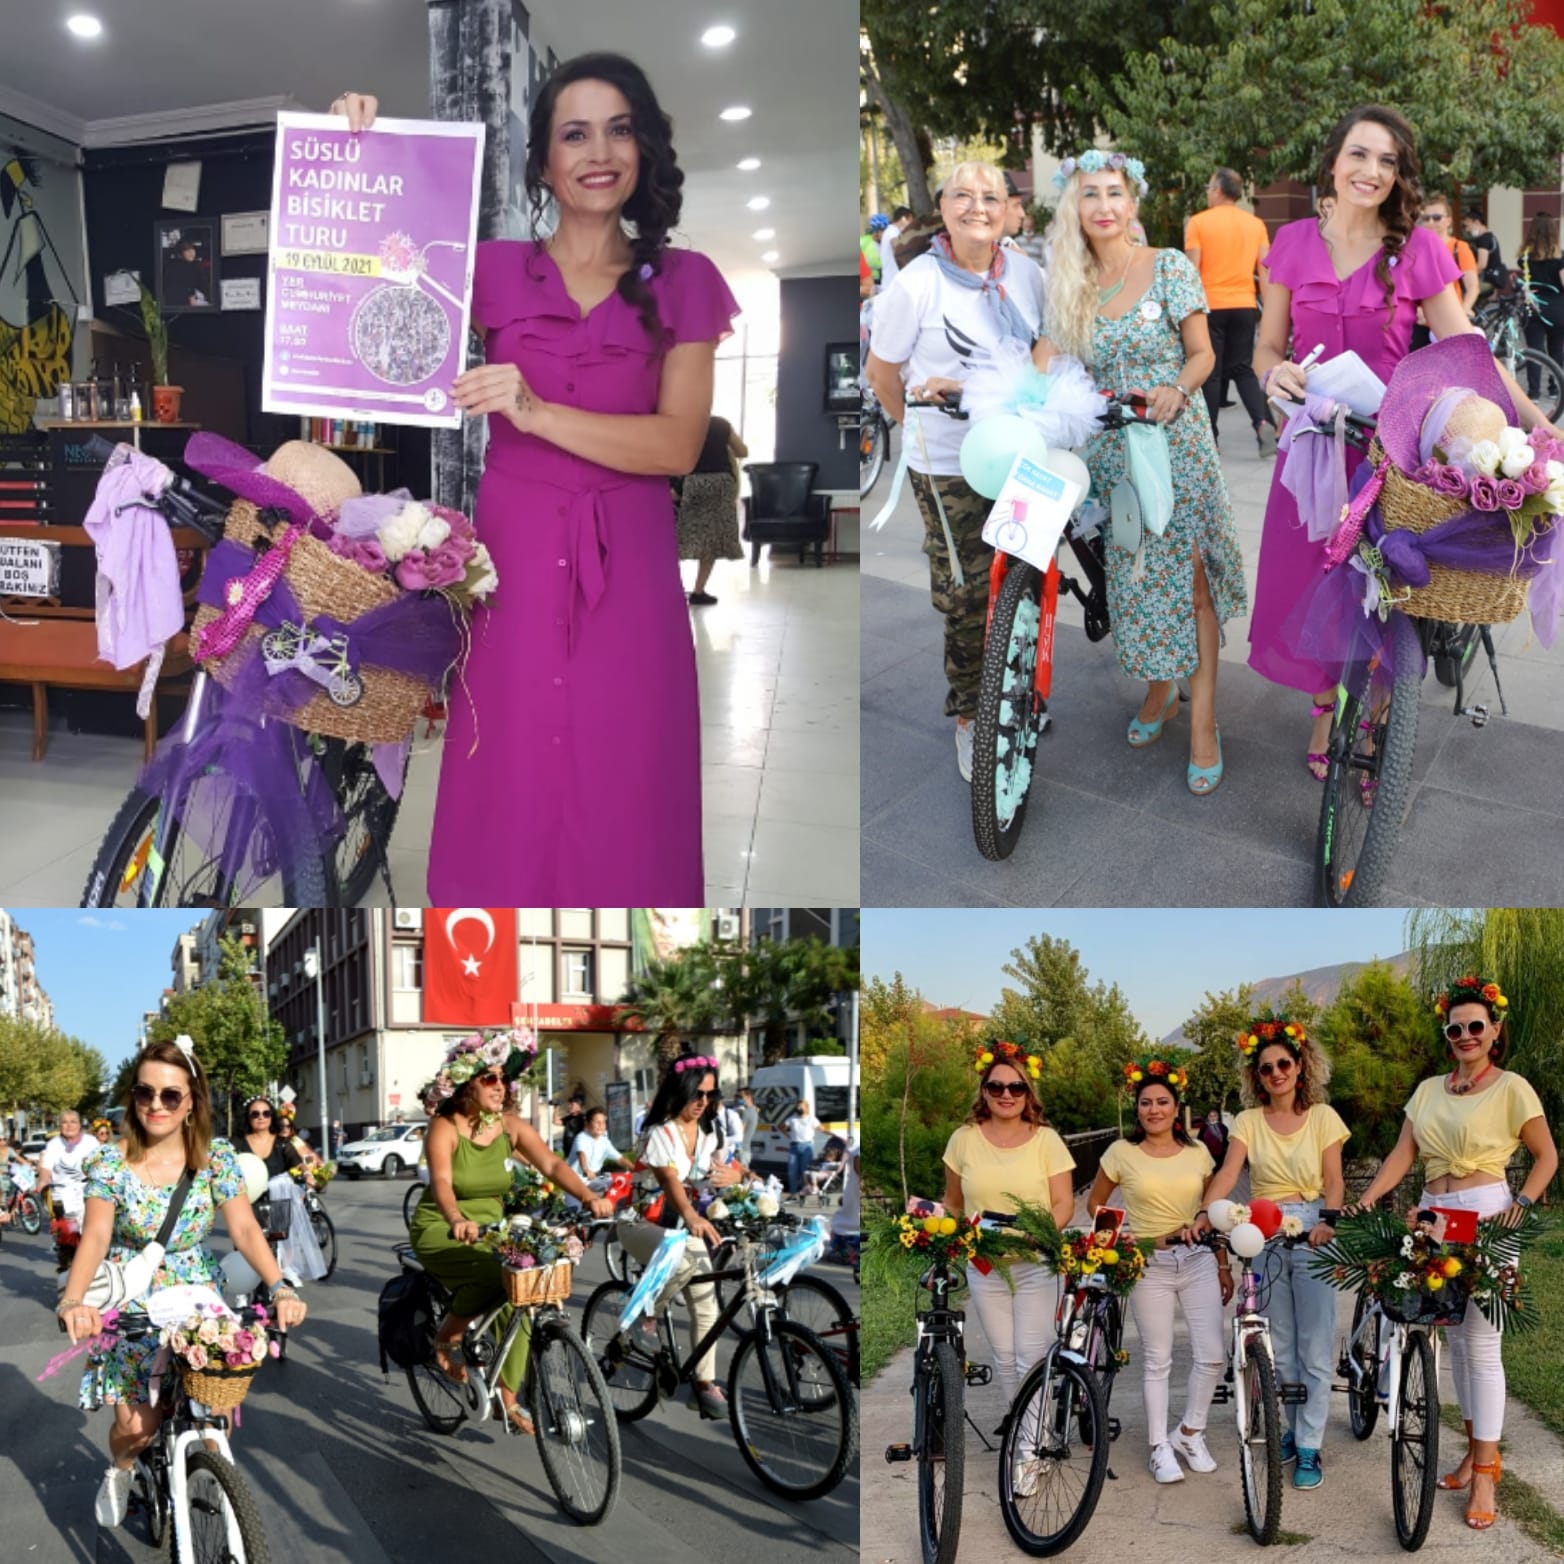 Manisa’da ‘Süslü Kadınlar Bisiklet Turu’ yapıldı